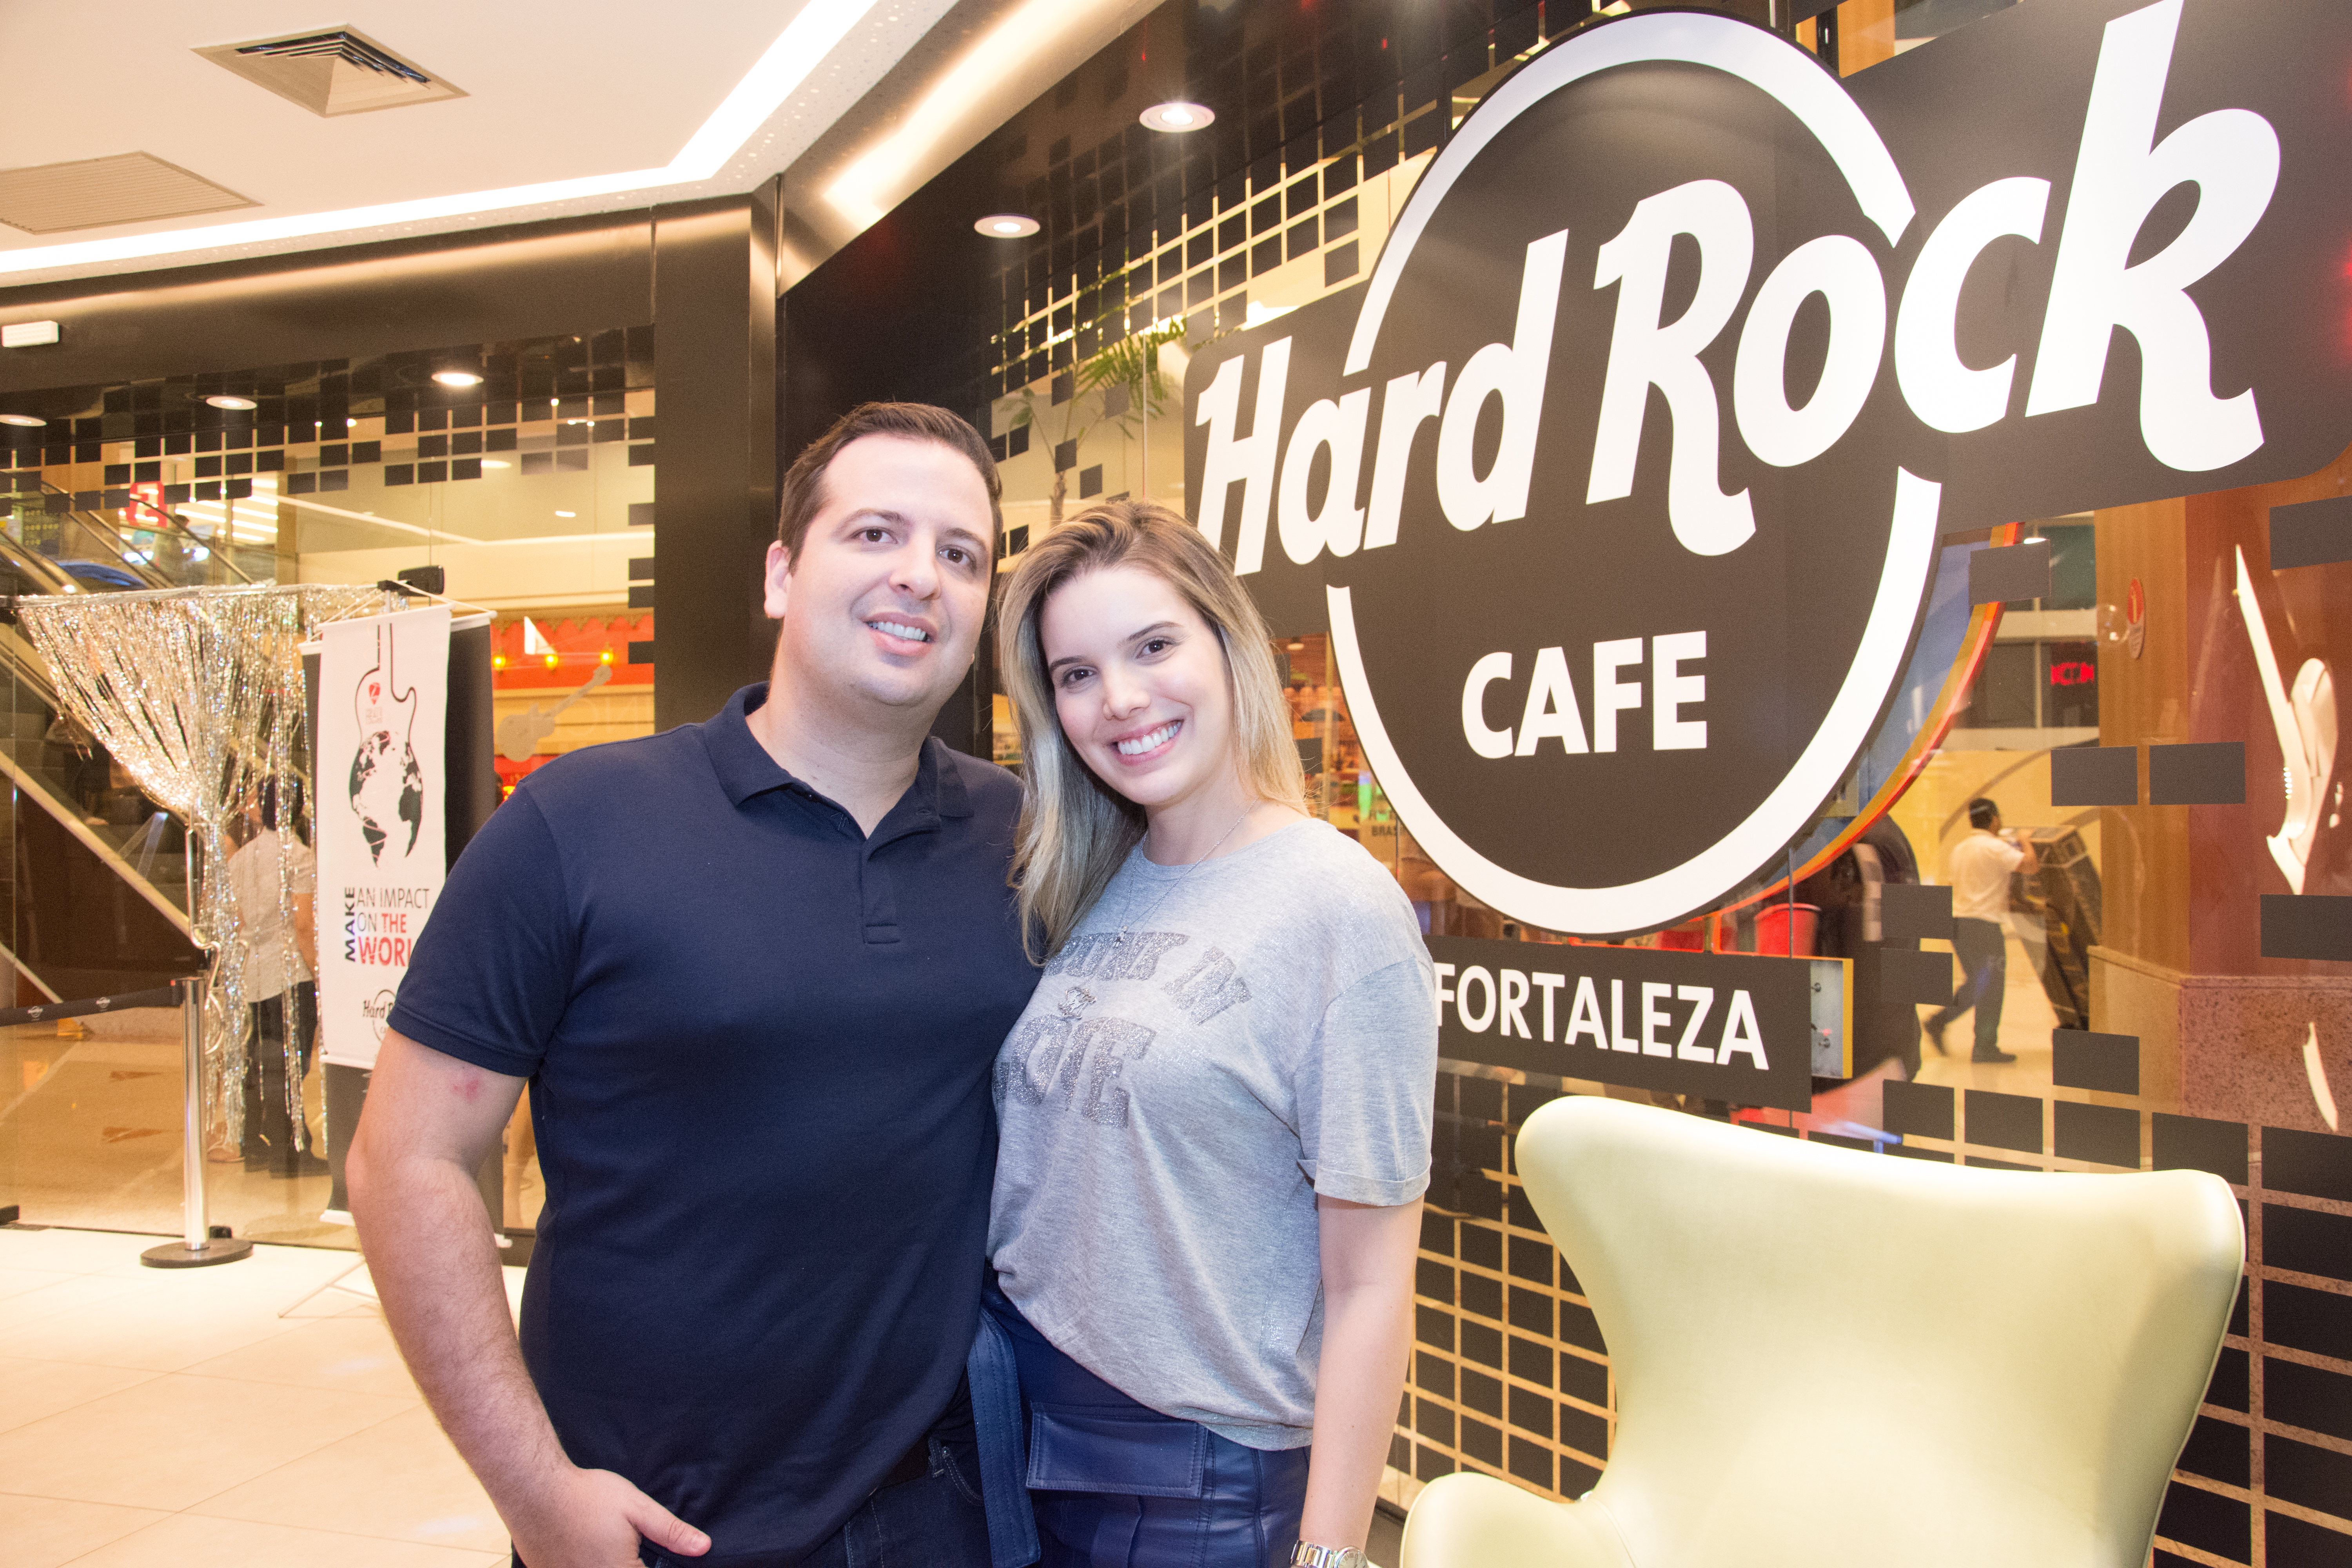 Aniversário da rede Hard Rock Cafe é celebrado em Fortaleza com tema 70s